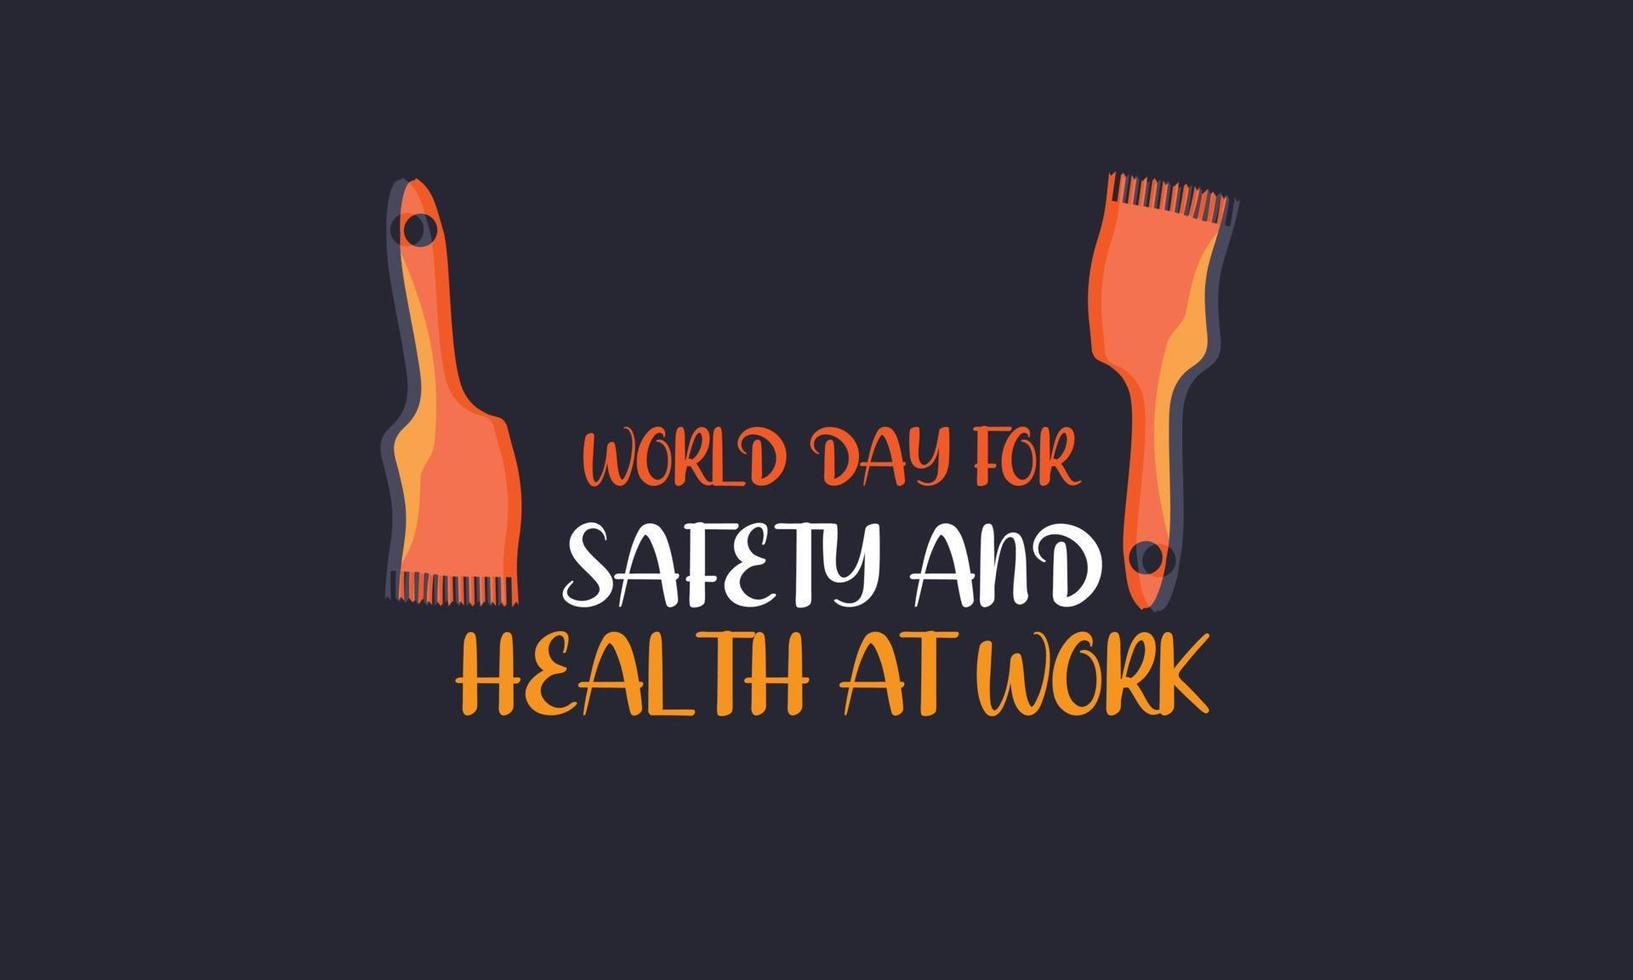 monde journée pour sécurité et santé à travail. modèle pour arrière-plan, bannière, carte, affiche vecteur